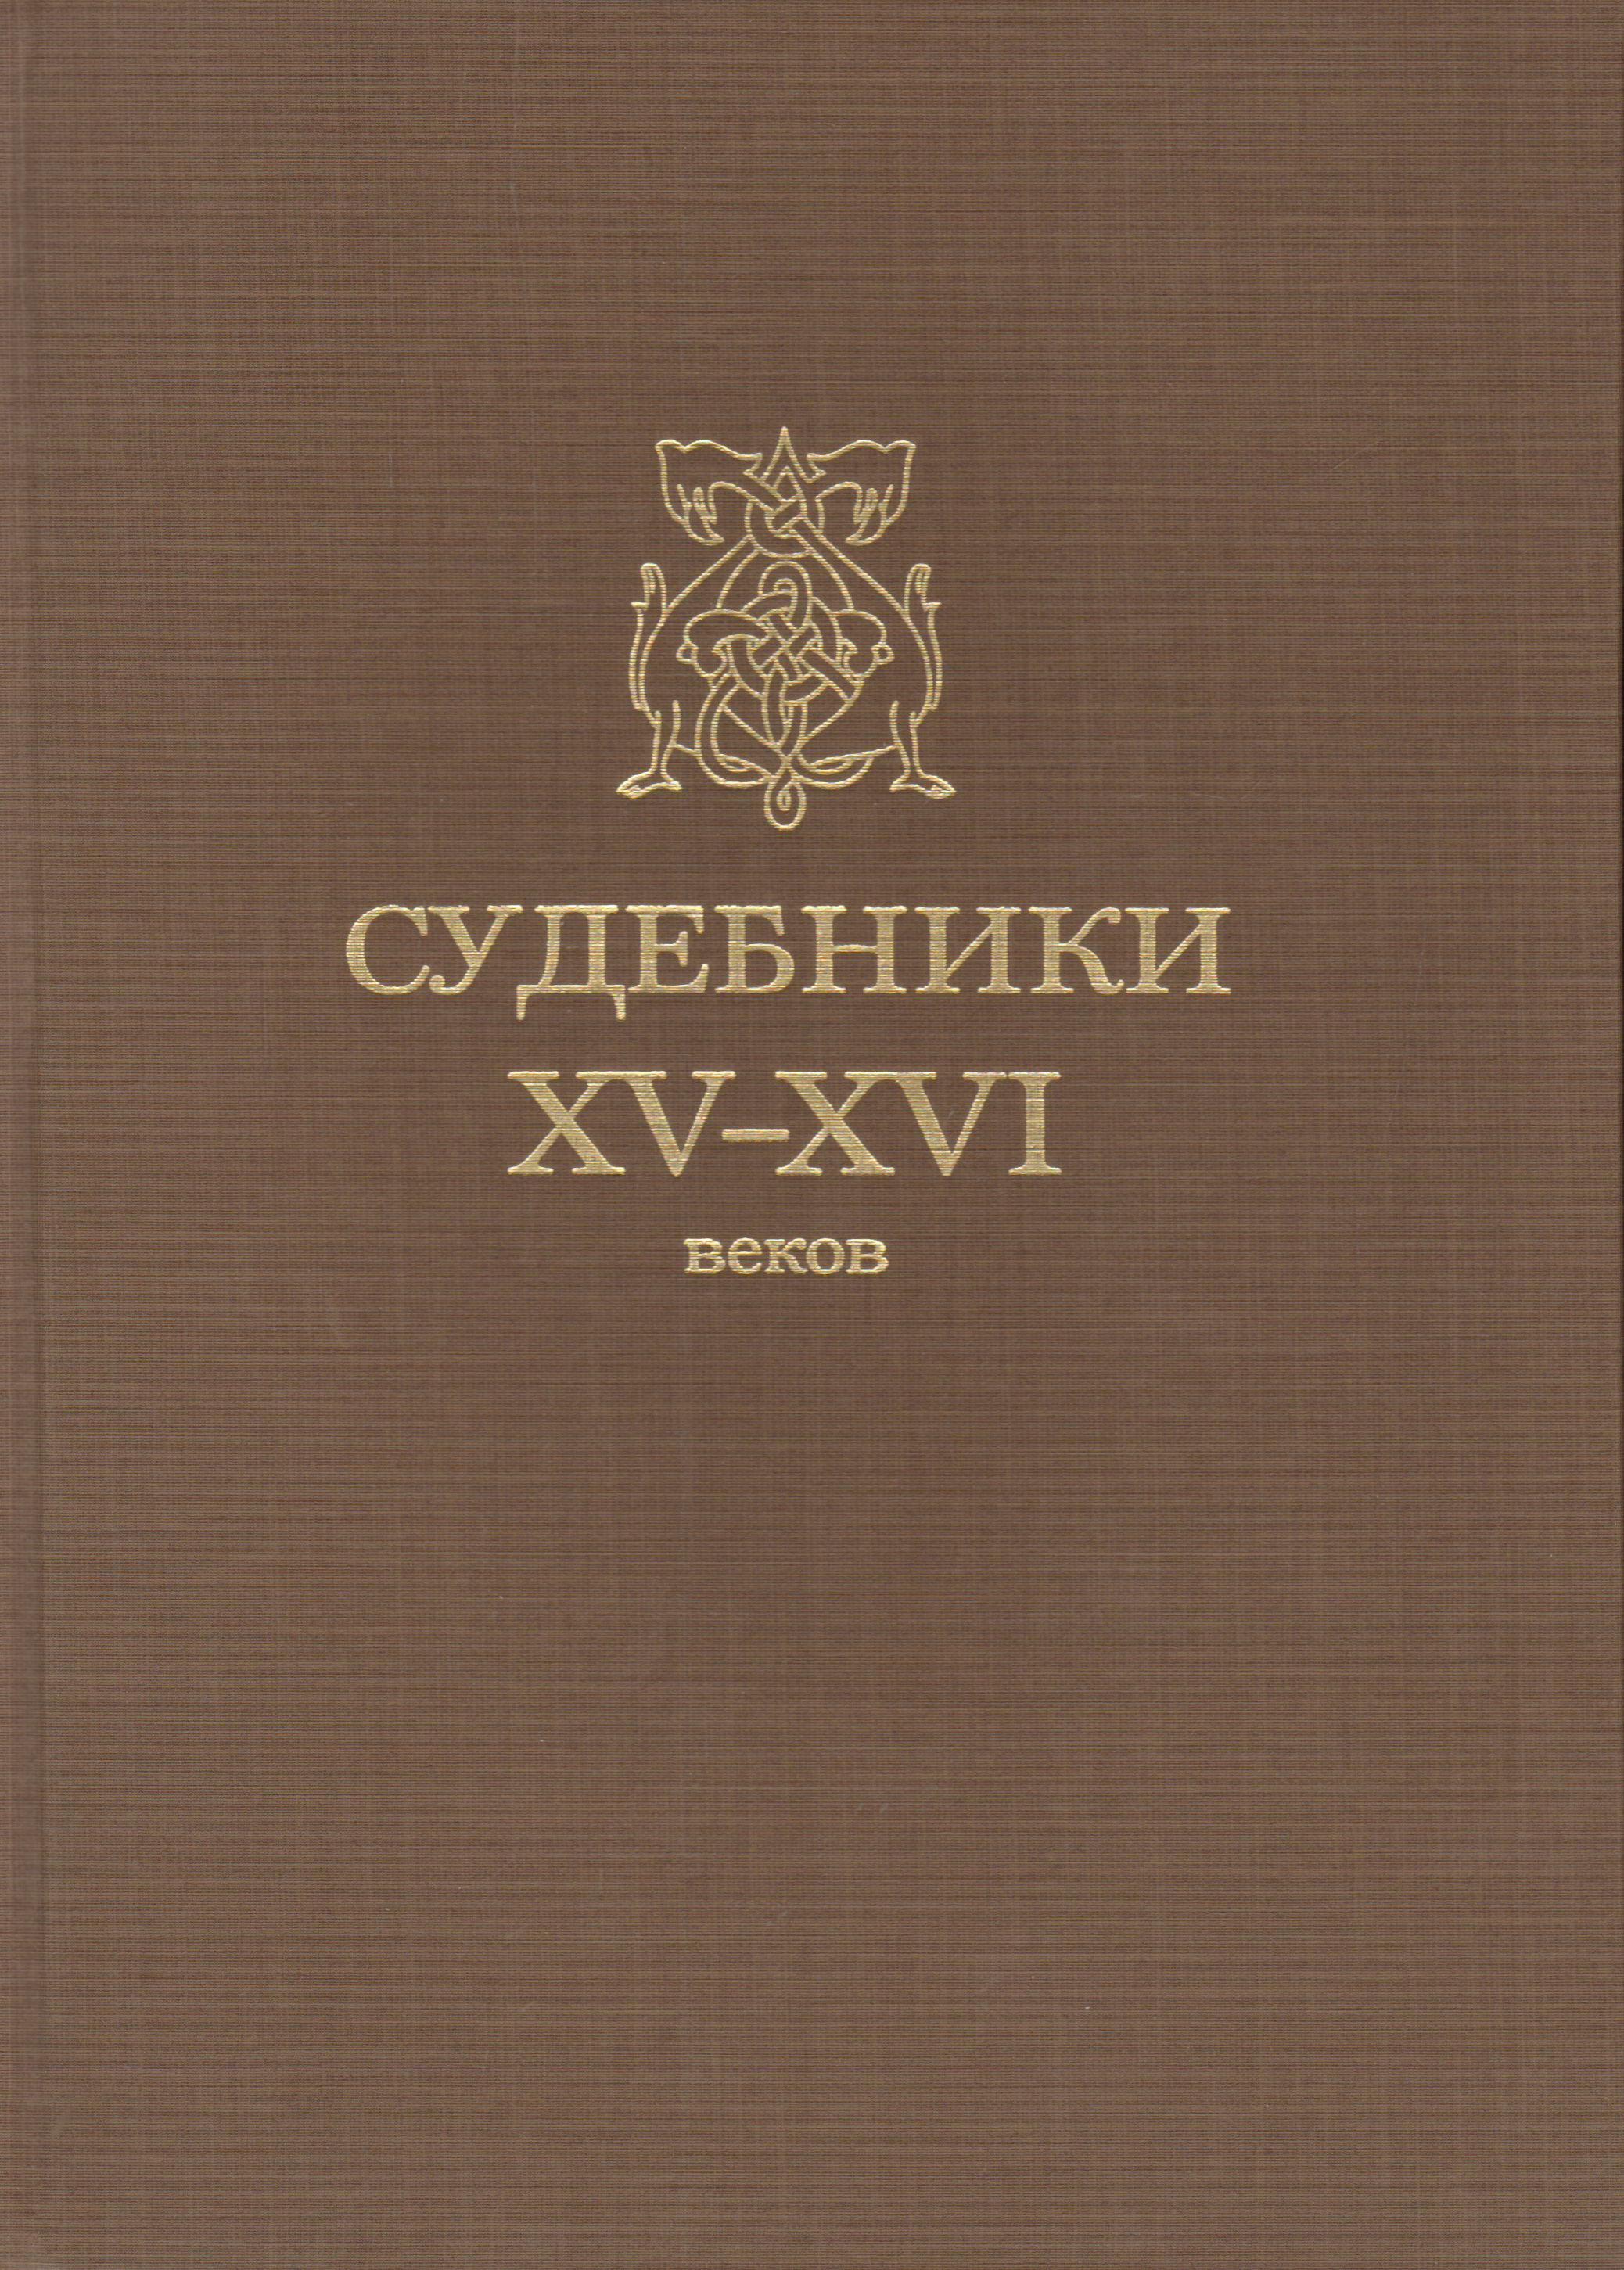 Судебники XV-XVI веков. (Репринт изд. 1952 г.)